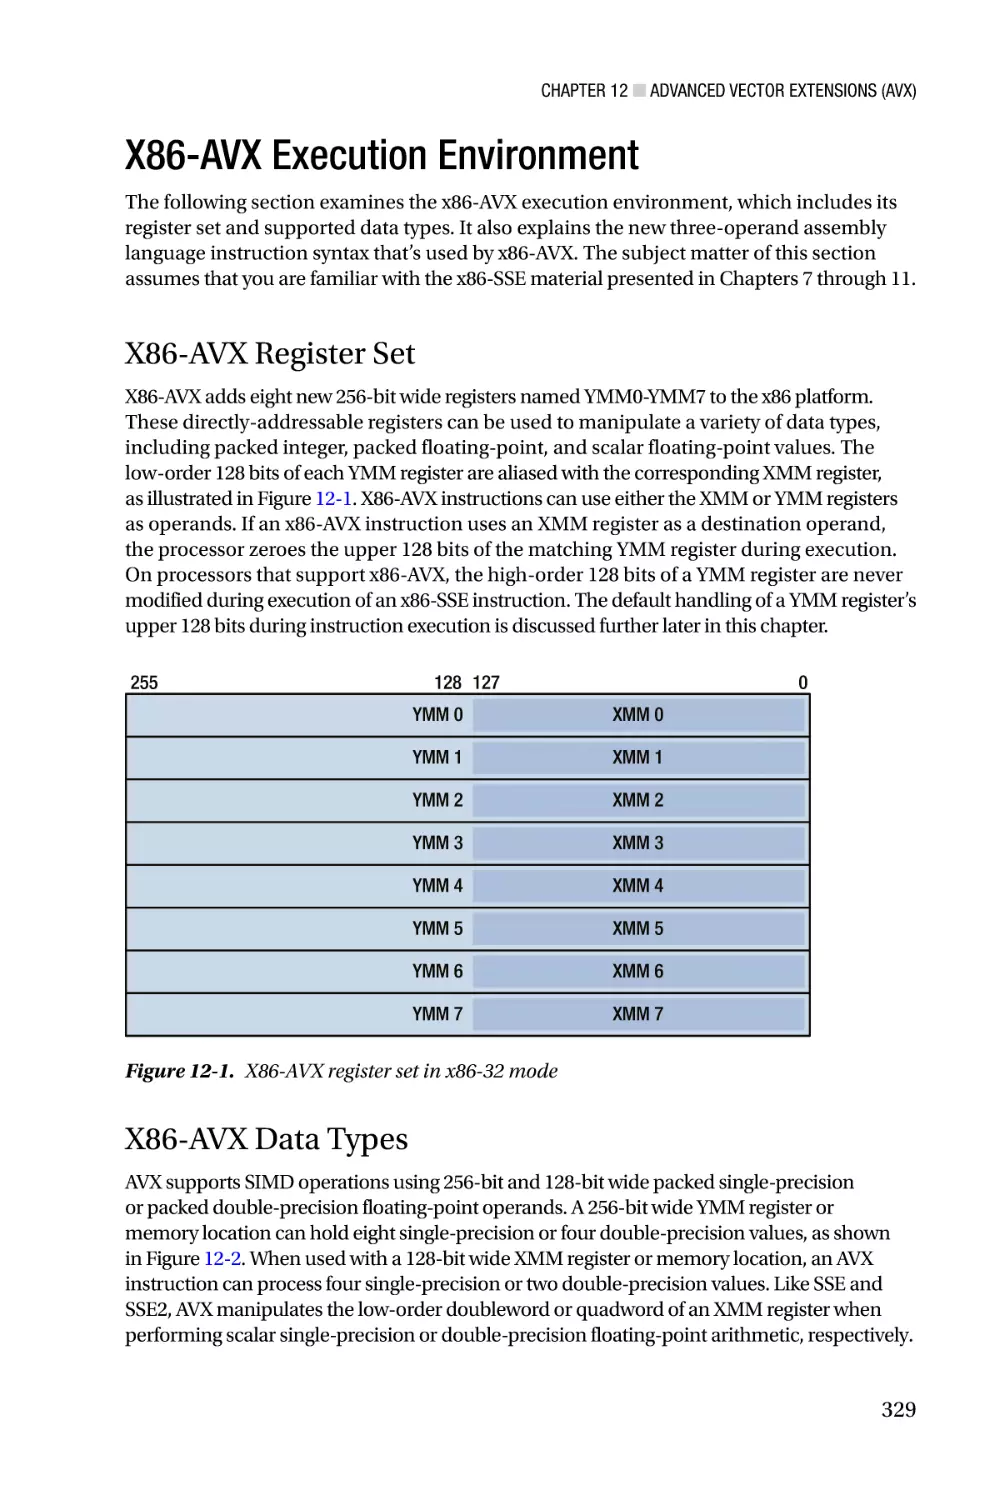 X86-AVX Execution Environment
X86-AVX Register Set
X86-AVX Data Types